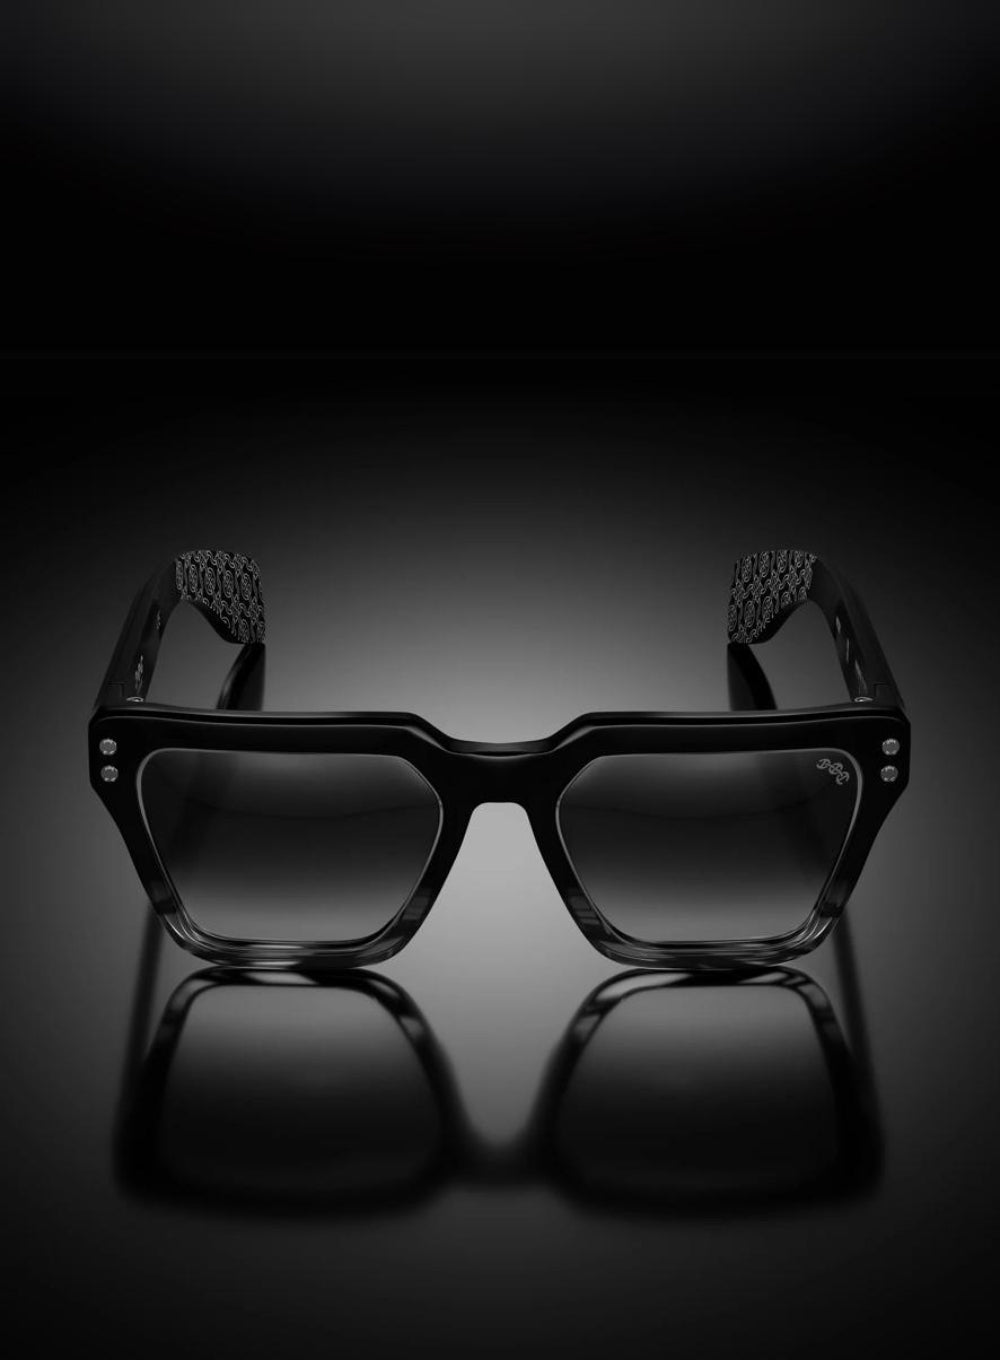 HOORSENBUHS | Model X Black & Grey Tortoise Frame Sunglasses